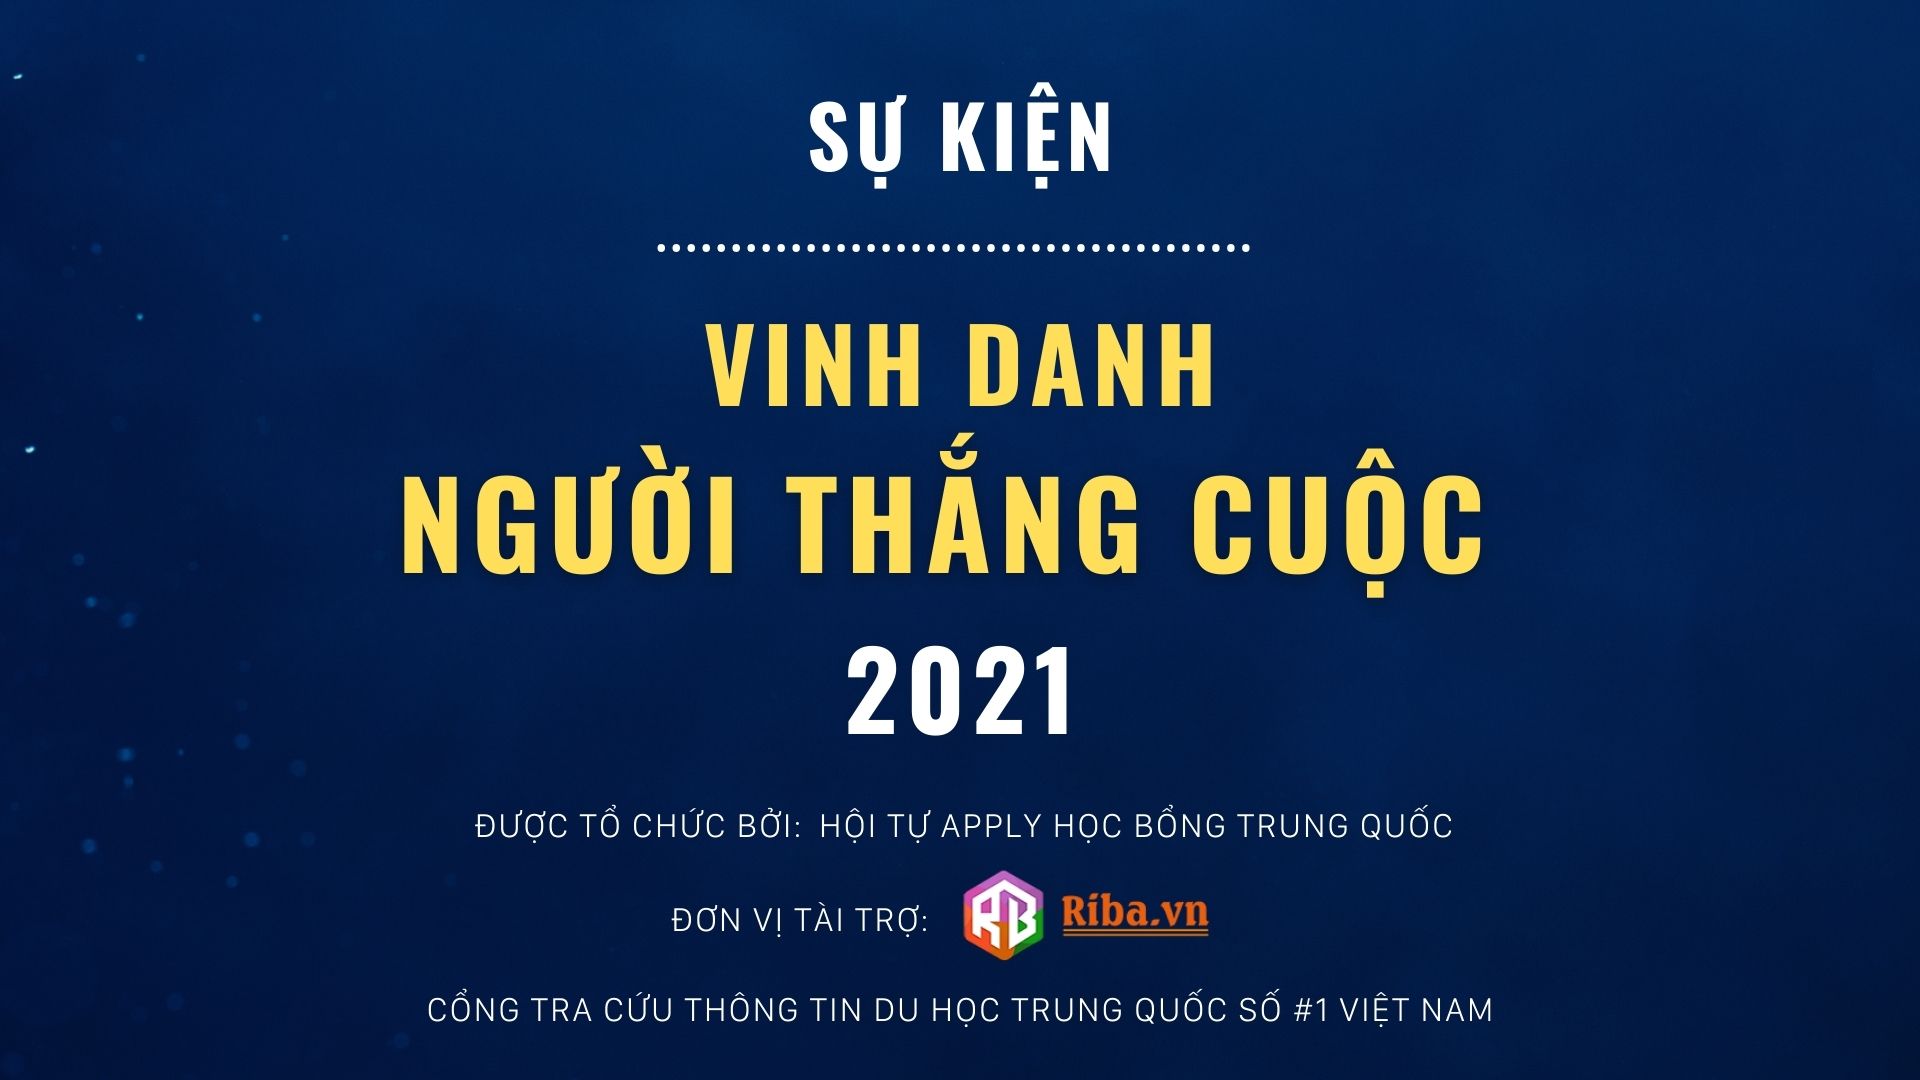 ngoc-huyen-su-kien-vinh-danh-nguoi-thang-cuoc-2021